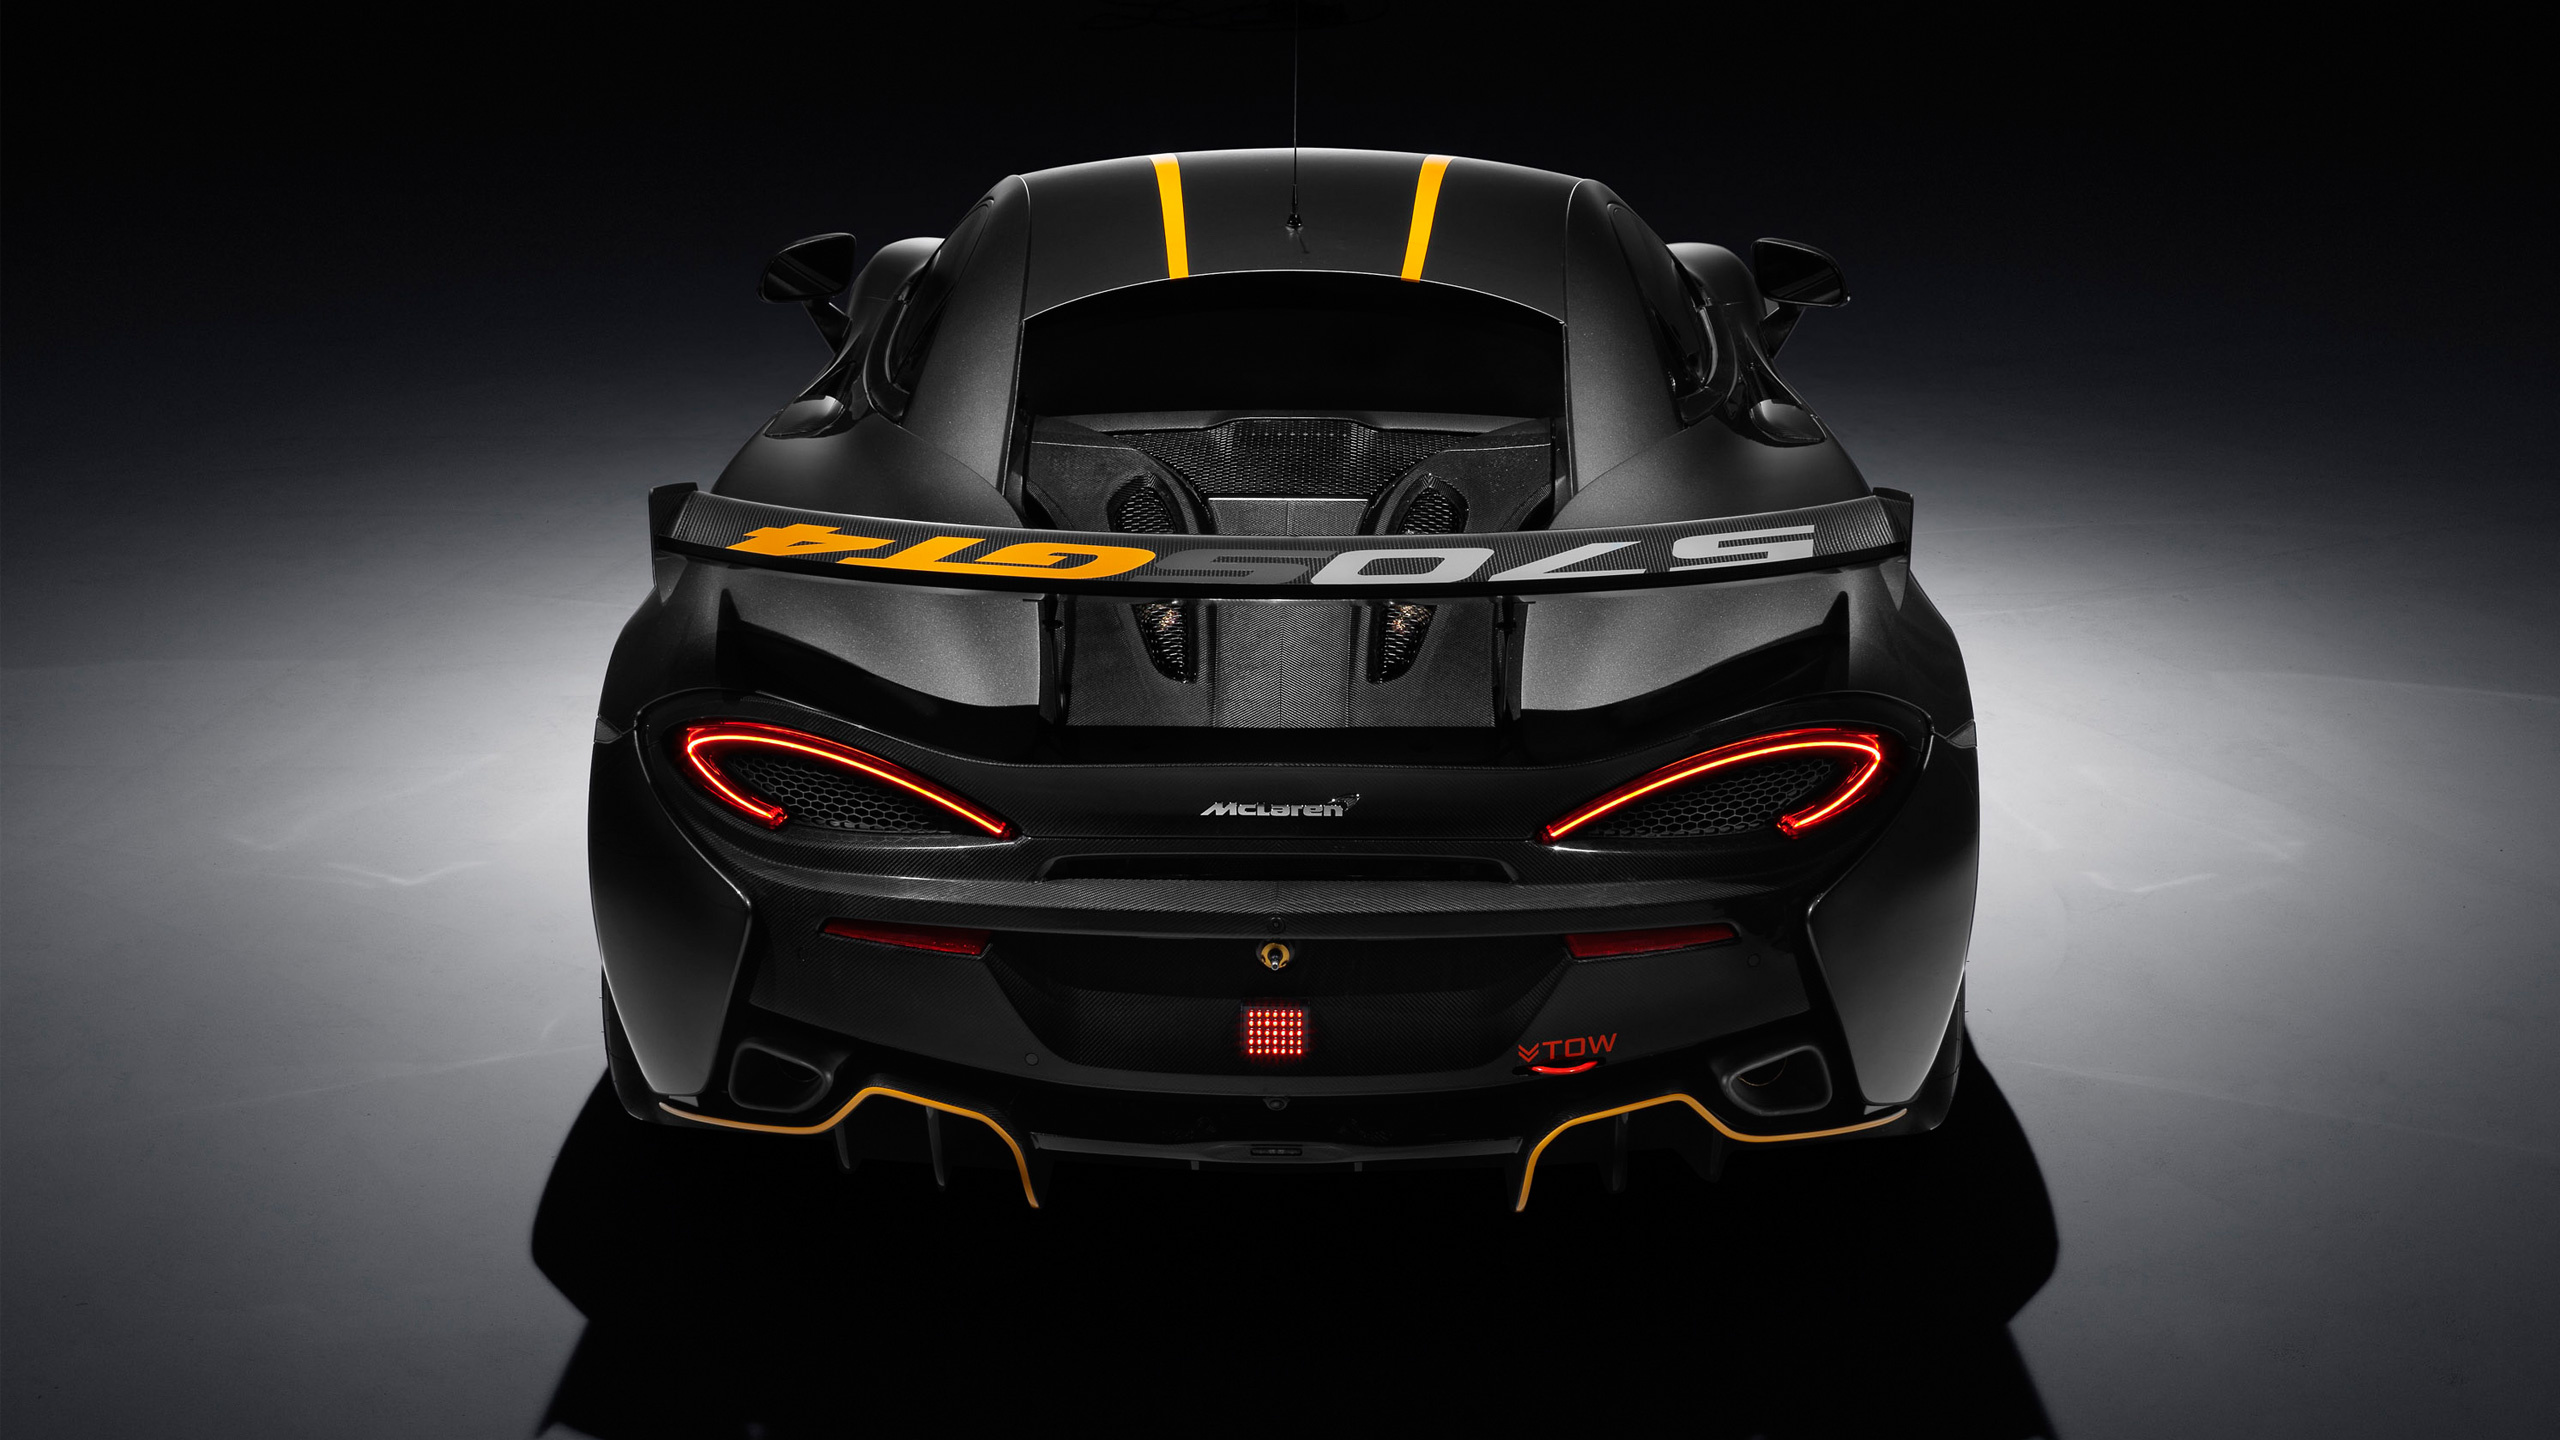 McLaren 570S, Sports car beauty, GT4 racing variant, High-performance machine, 2560x1440 HD Desktop